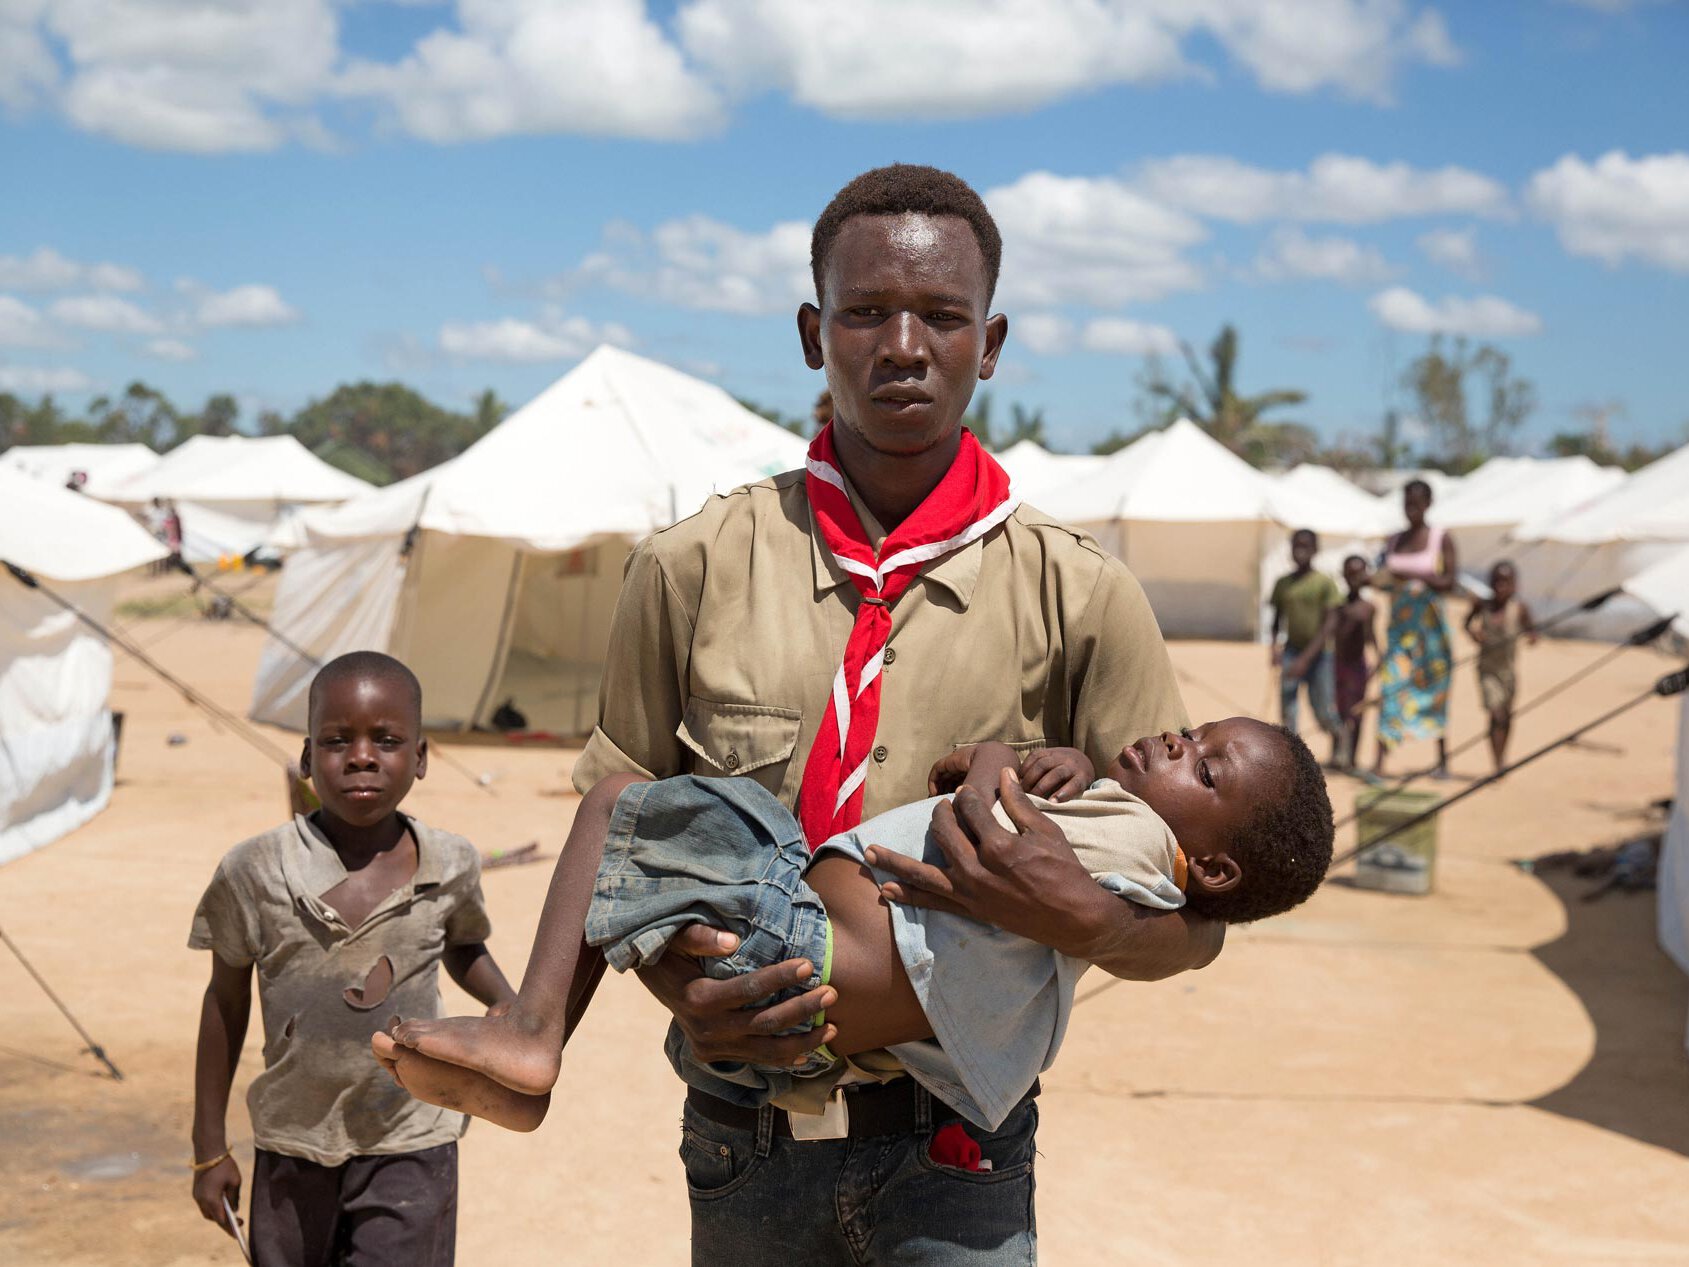 Freiwilliger Mitarbeiter trägt Flüchtlingskind mit Malaria in Mosambik.